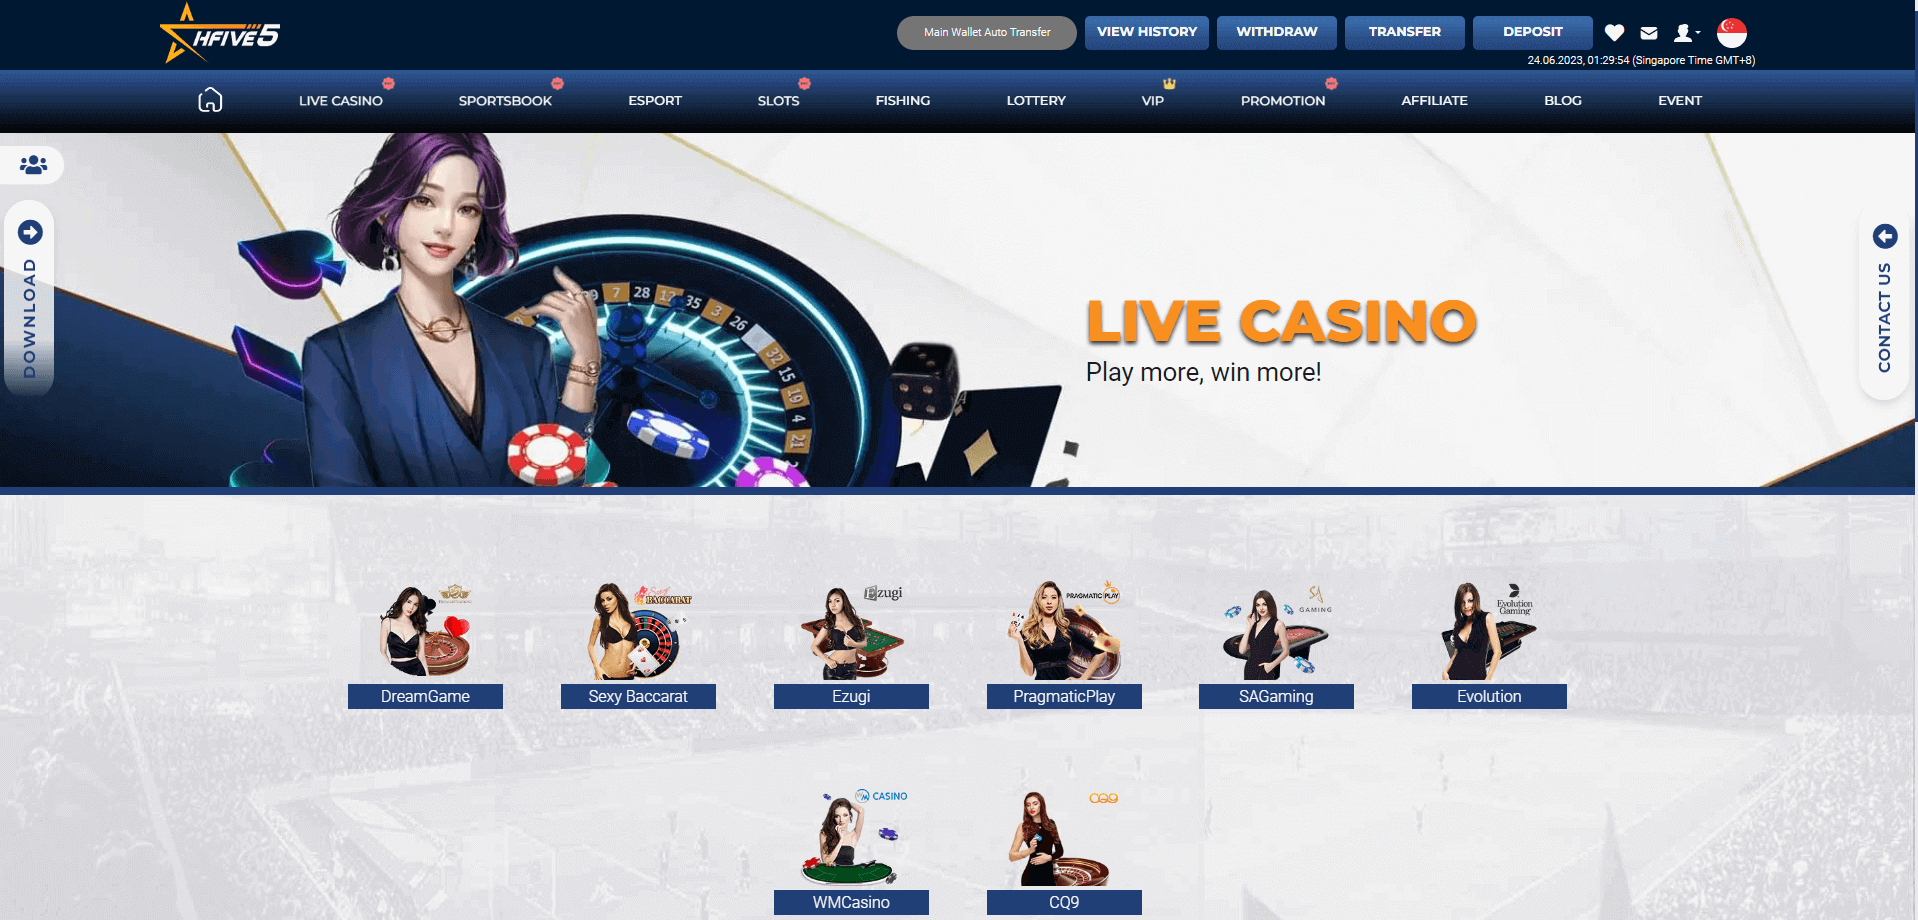 Hfive5 Live Casino